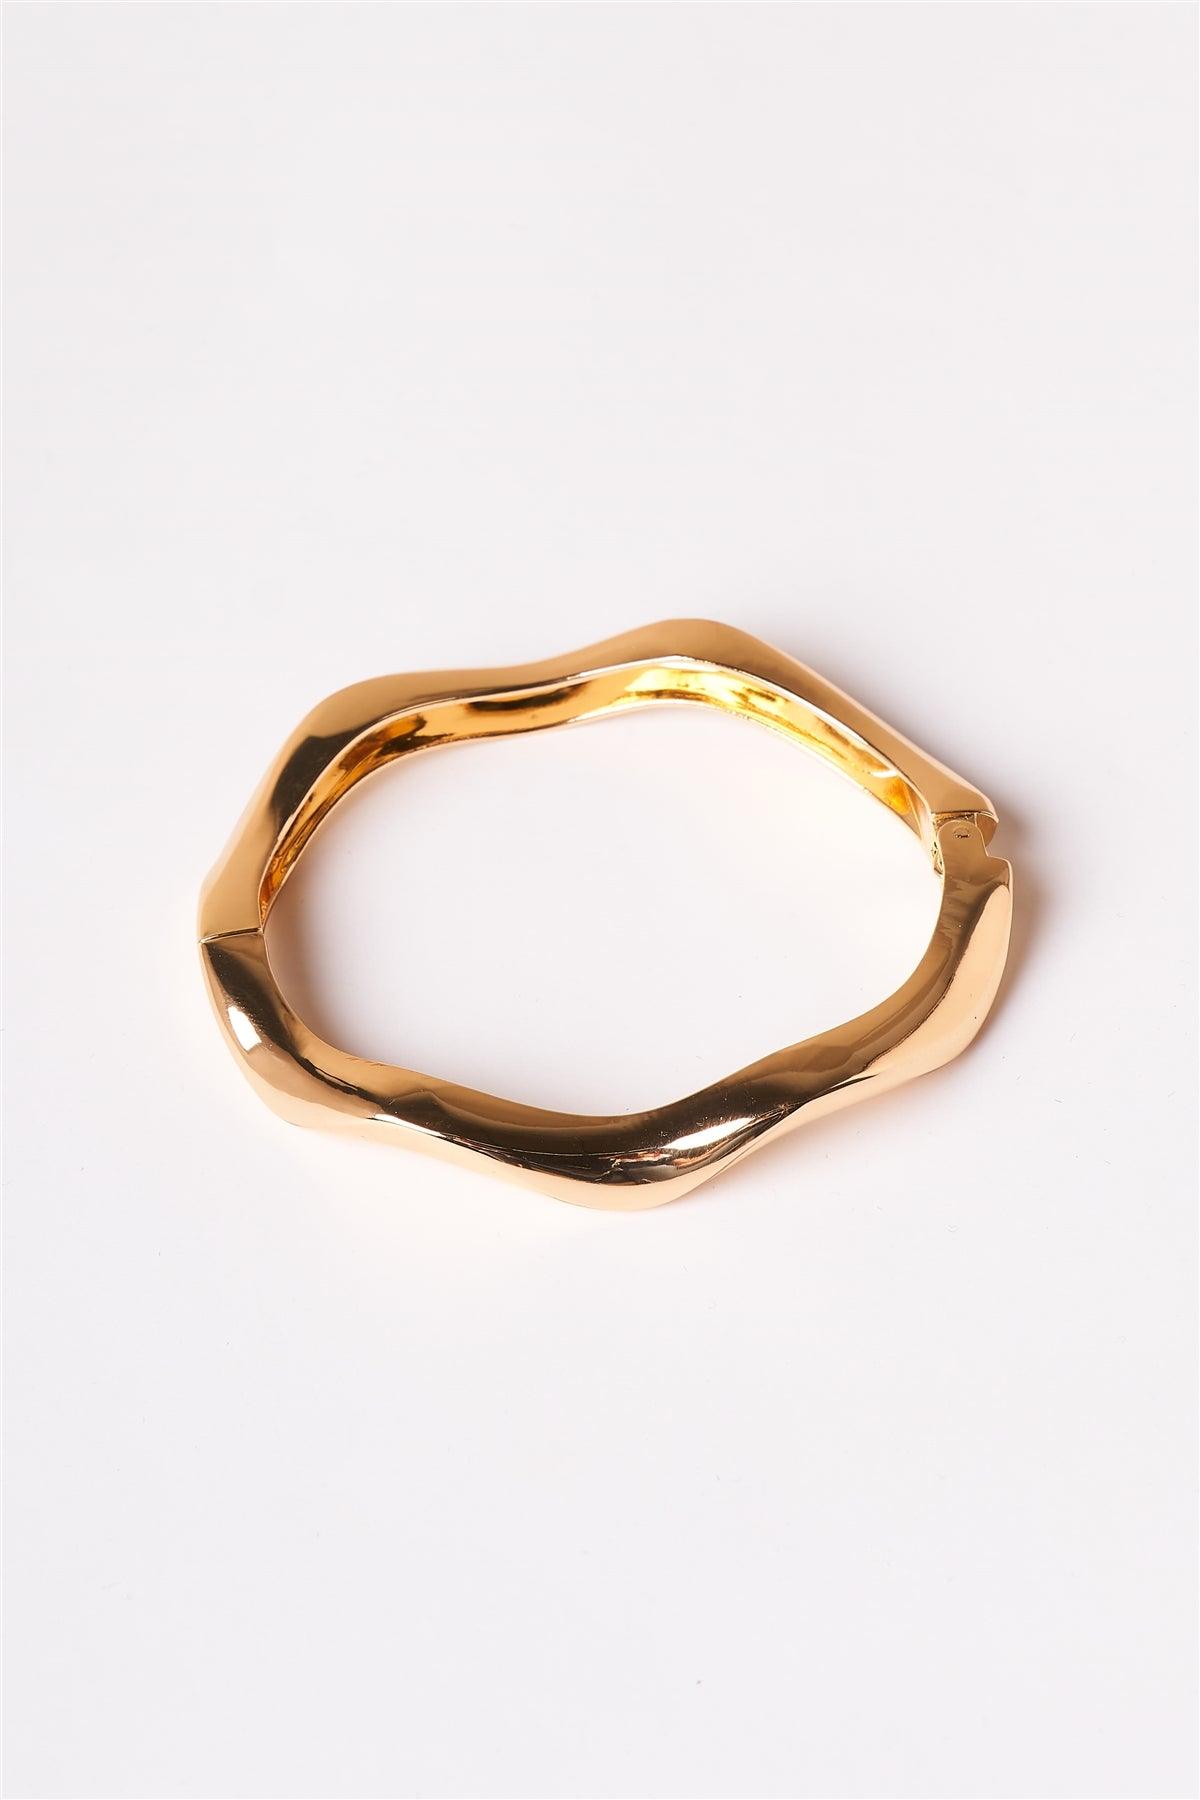 Gold Wavy Bangle Bracelet /1 Piece